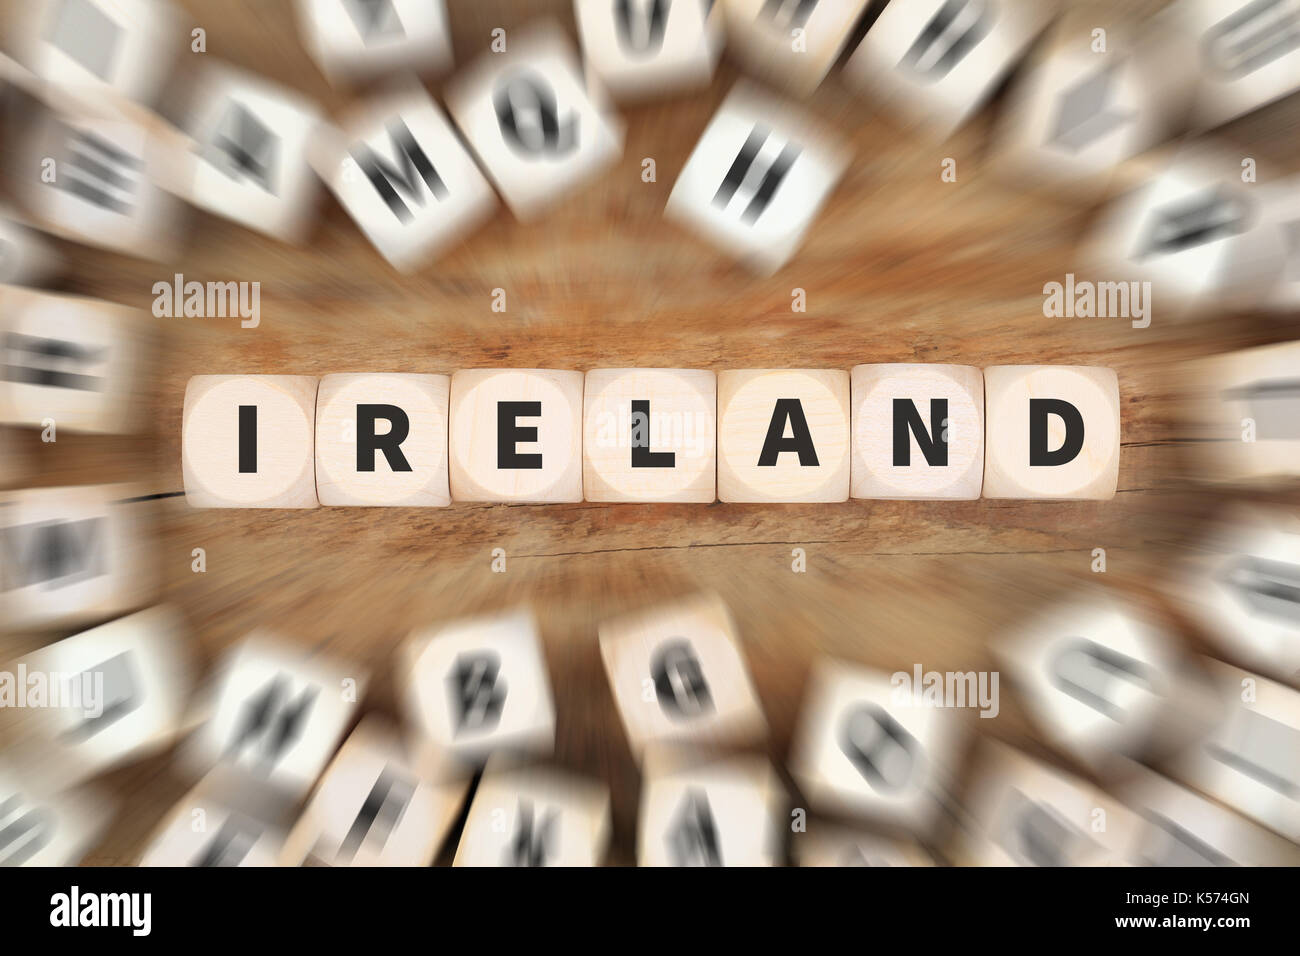 Pays Irlande voyage voyage d'affaires idée concept dés Banque D'Images